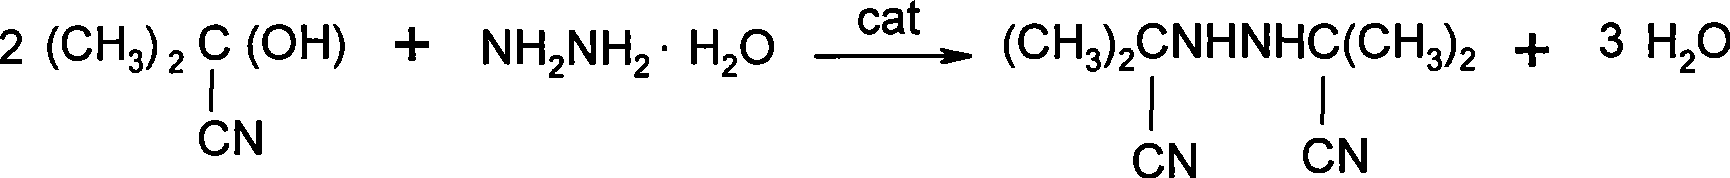 Method for synthesizing bis-isobutyronitrile hydrazine